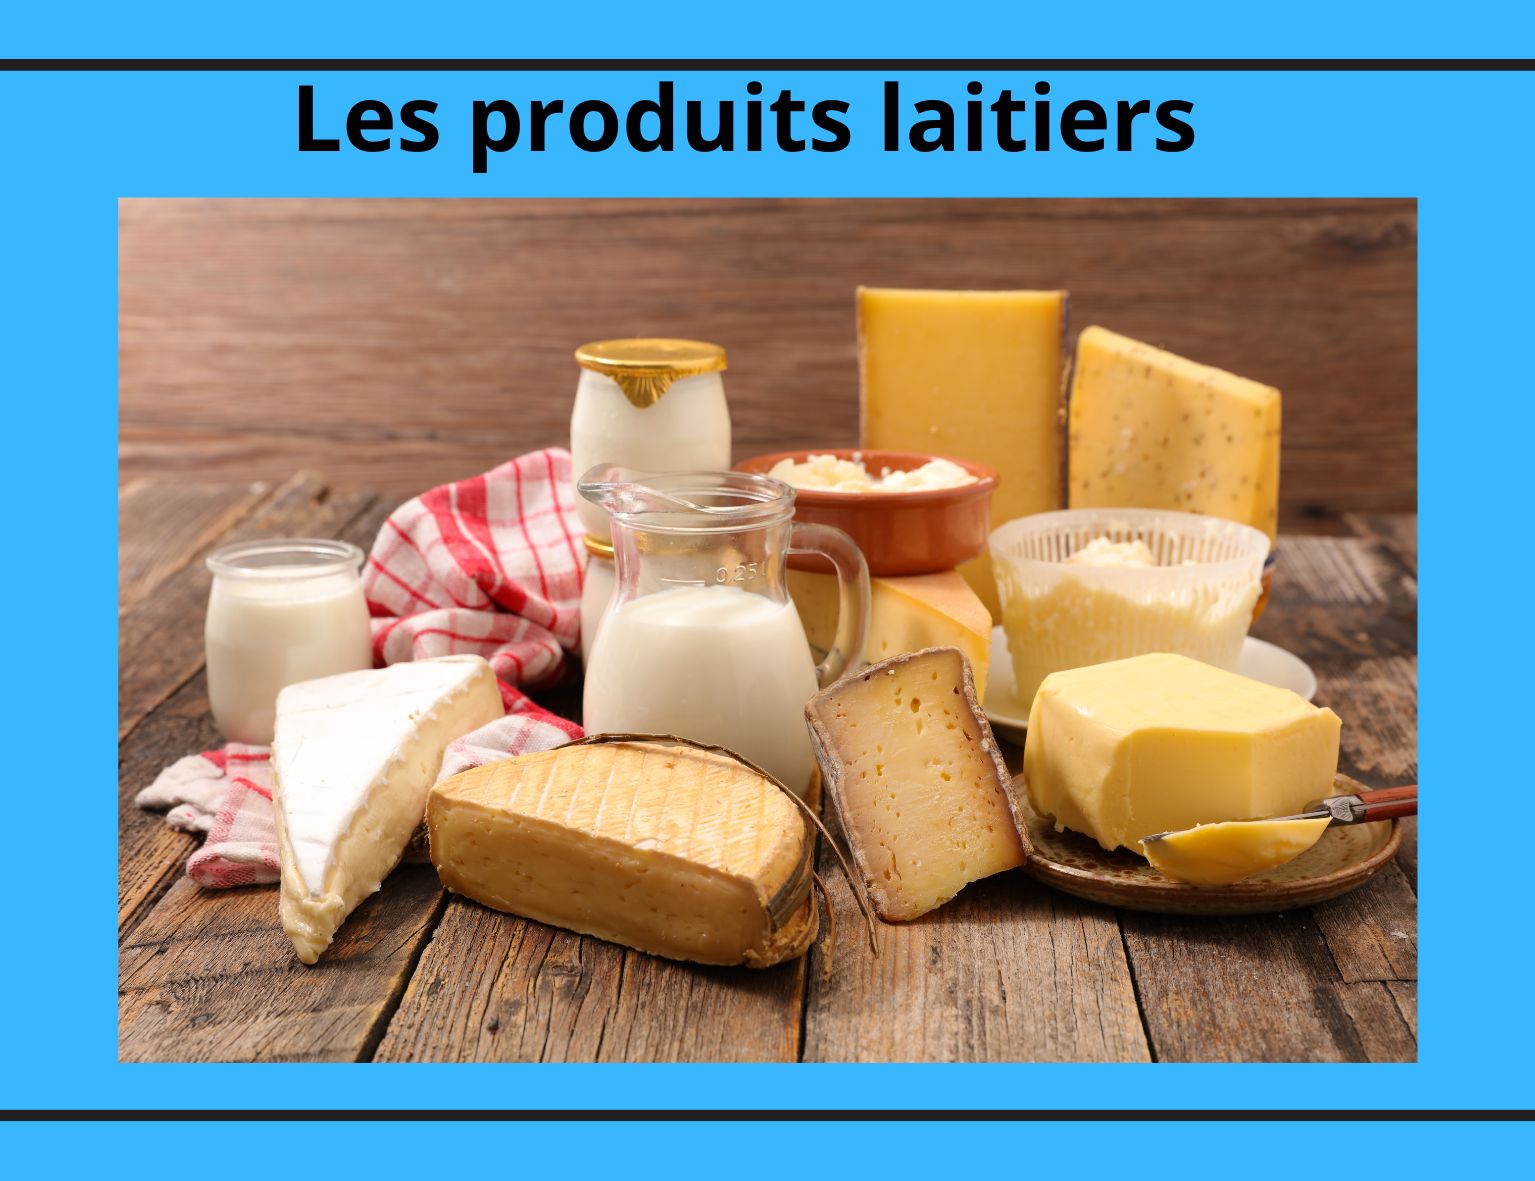 Les différents produits de la gamme des produits laitiers